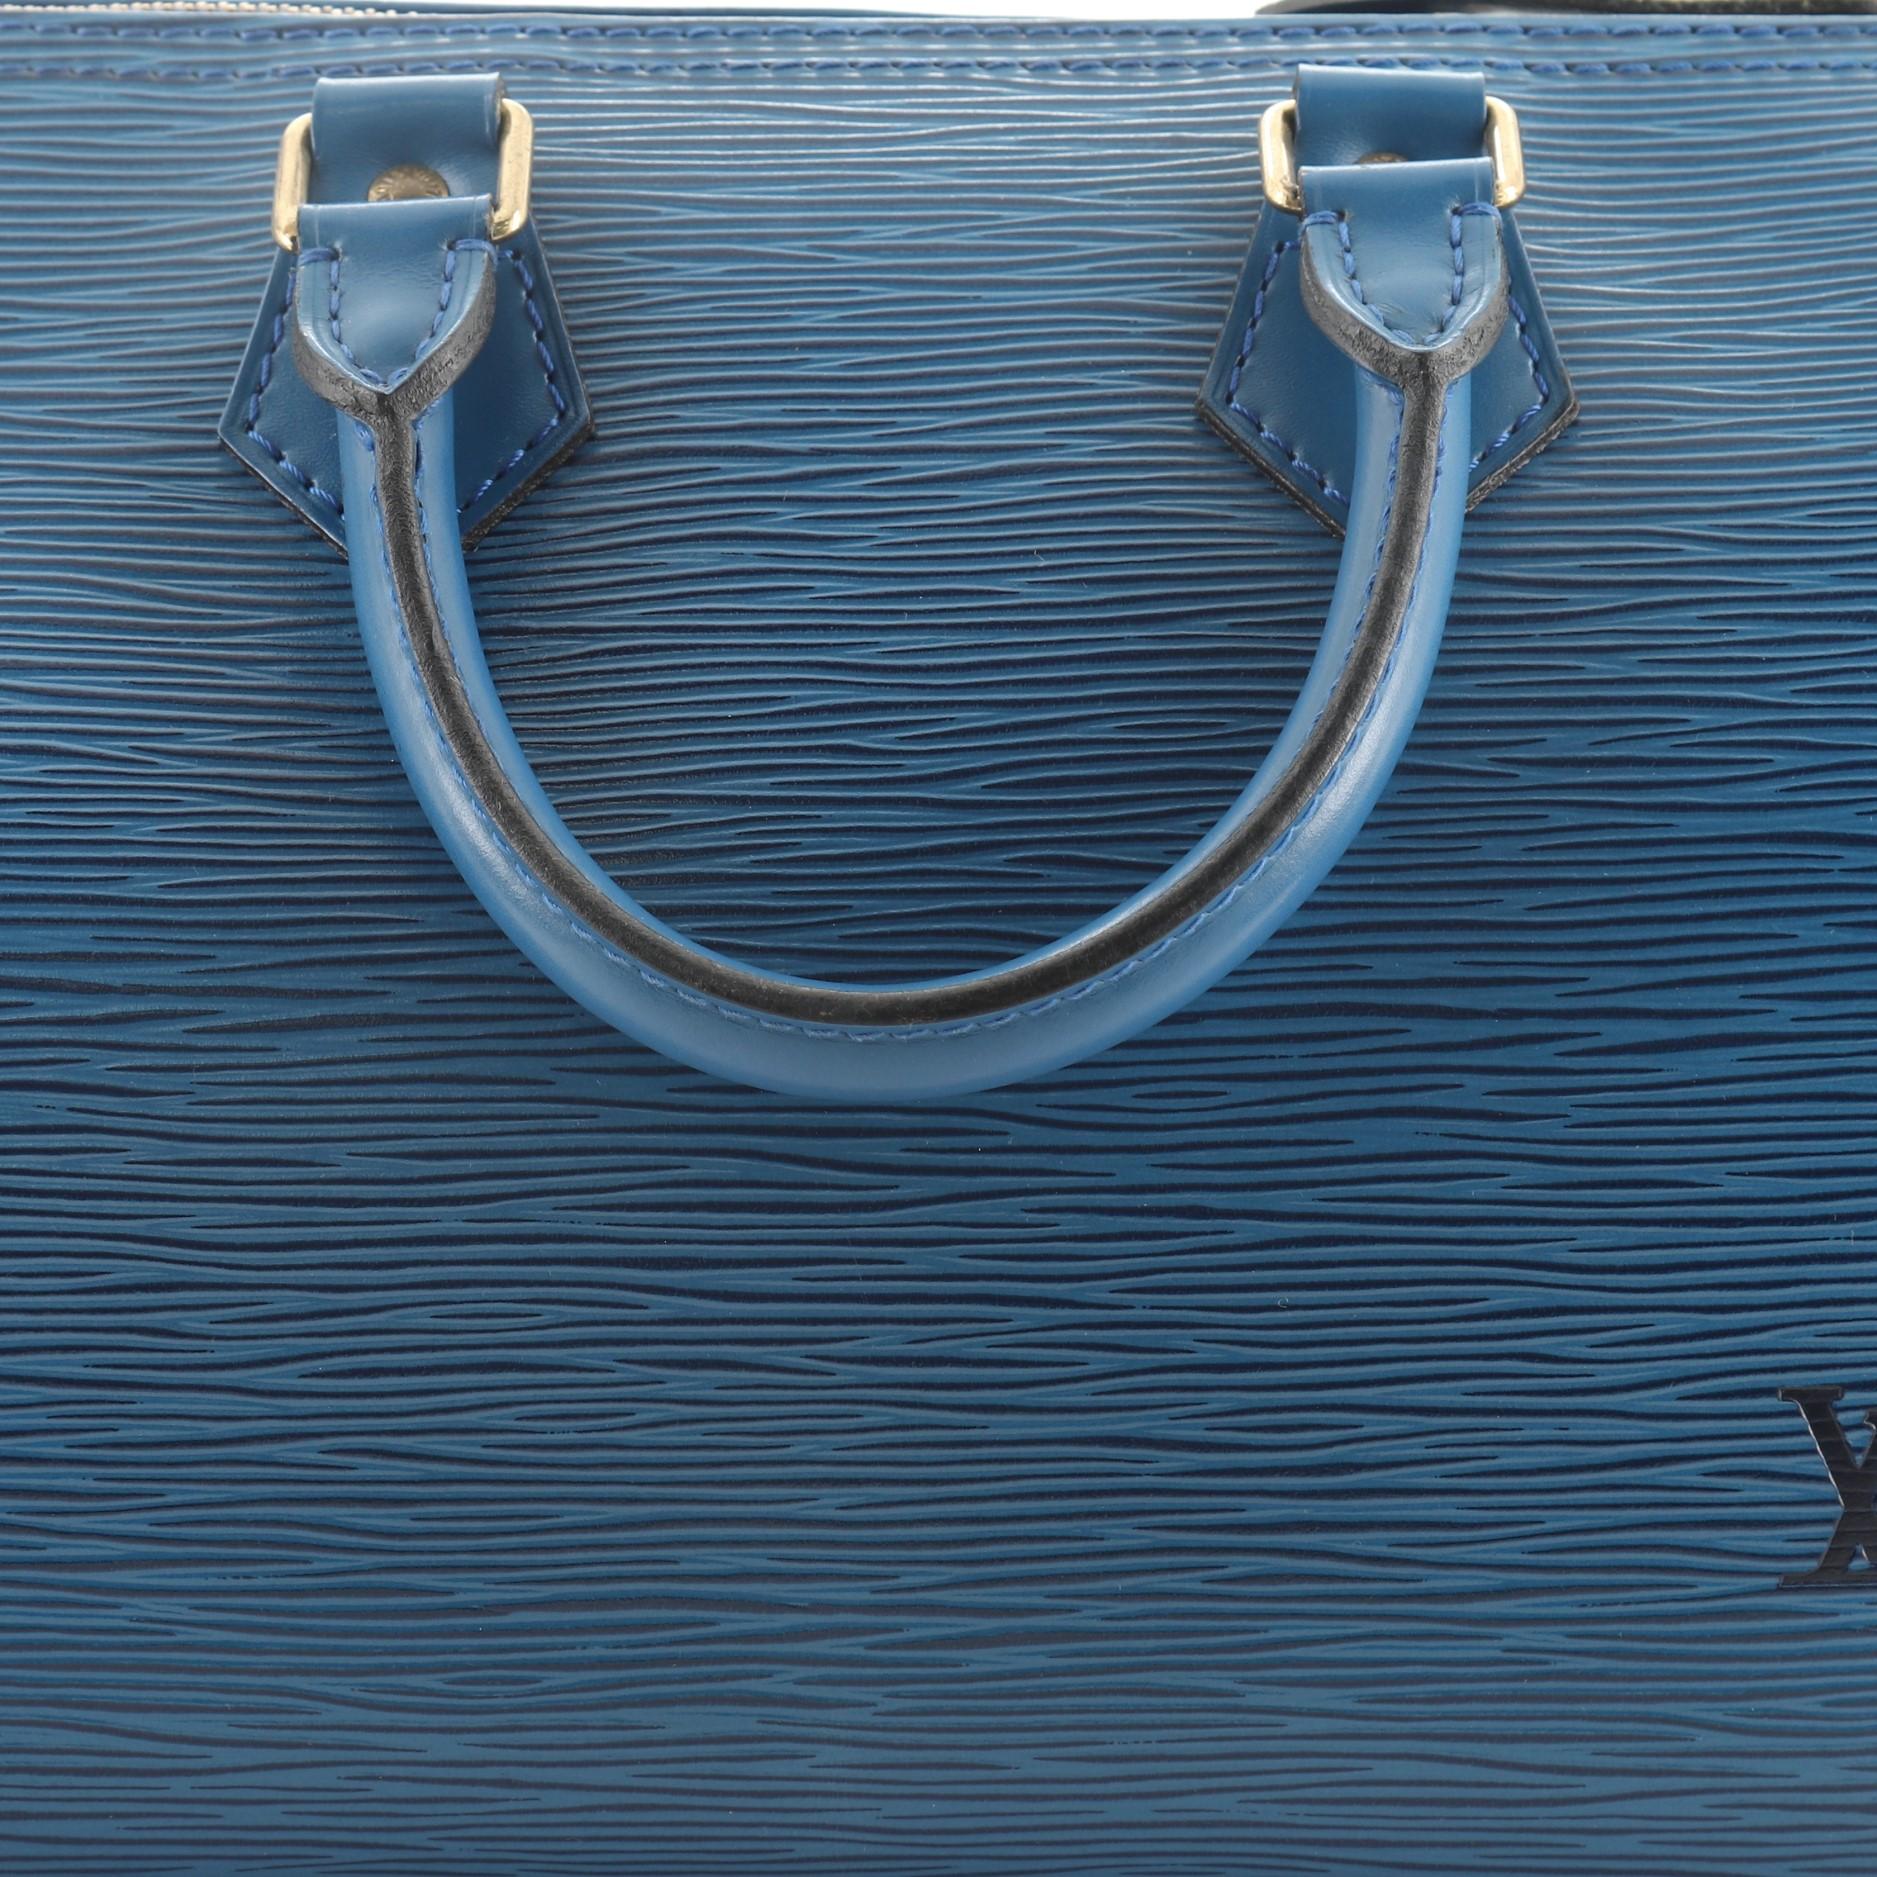 Louis Vuitton Speedy Handbag Epi Leather 25 4